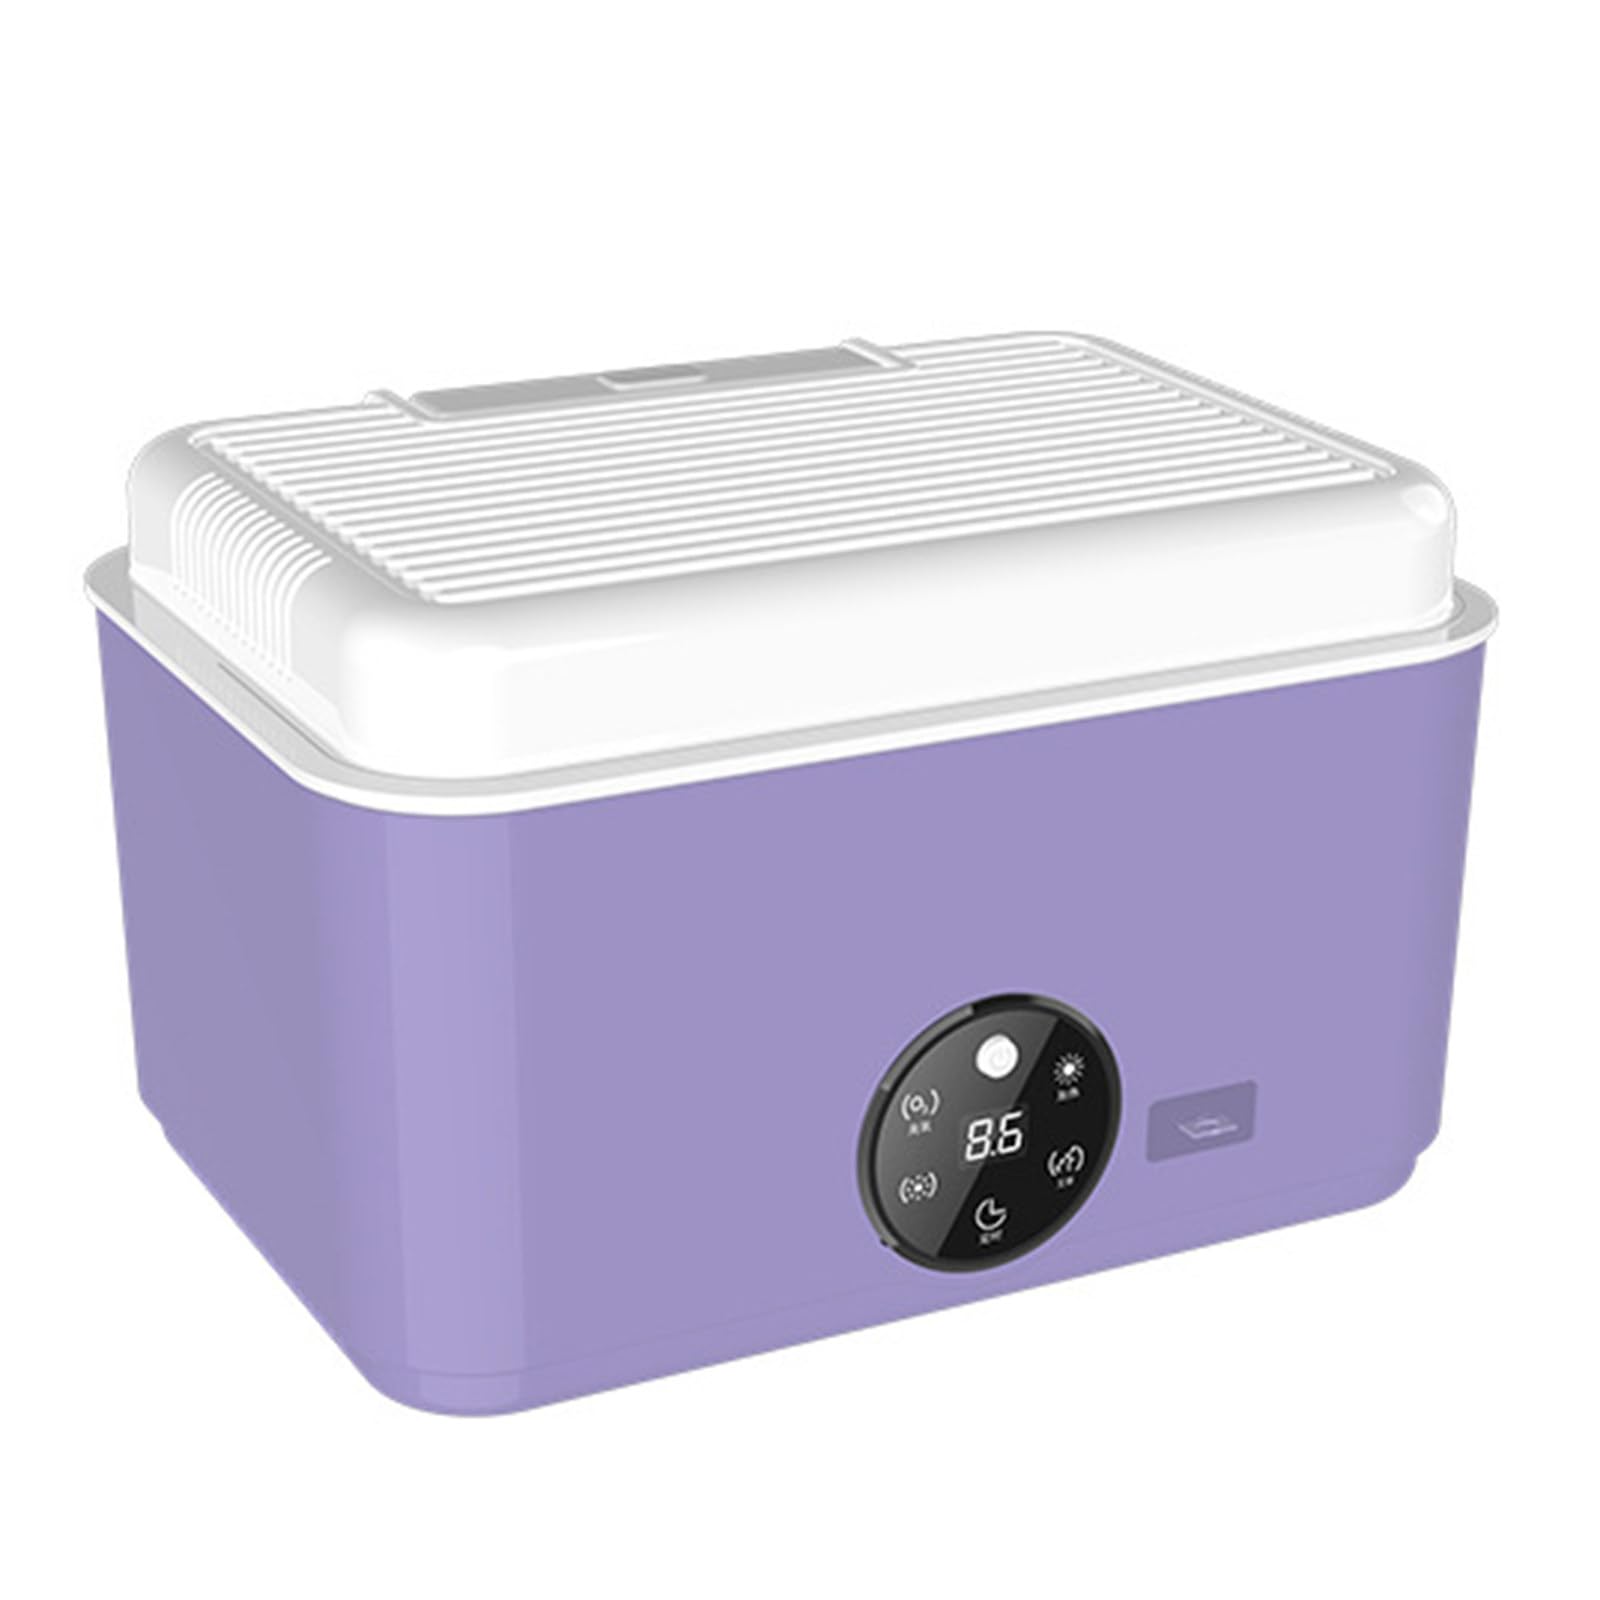 UV-Unterwäsche-Sterilisator, 300 W Sterilisationstrockner für Babykleidung, 60–75 ℃ Heißlufttemperatur, desodorierender Wäschetrockner für den Haushalt, 220 V,Purple